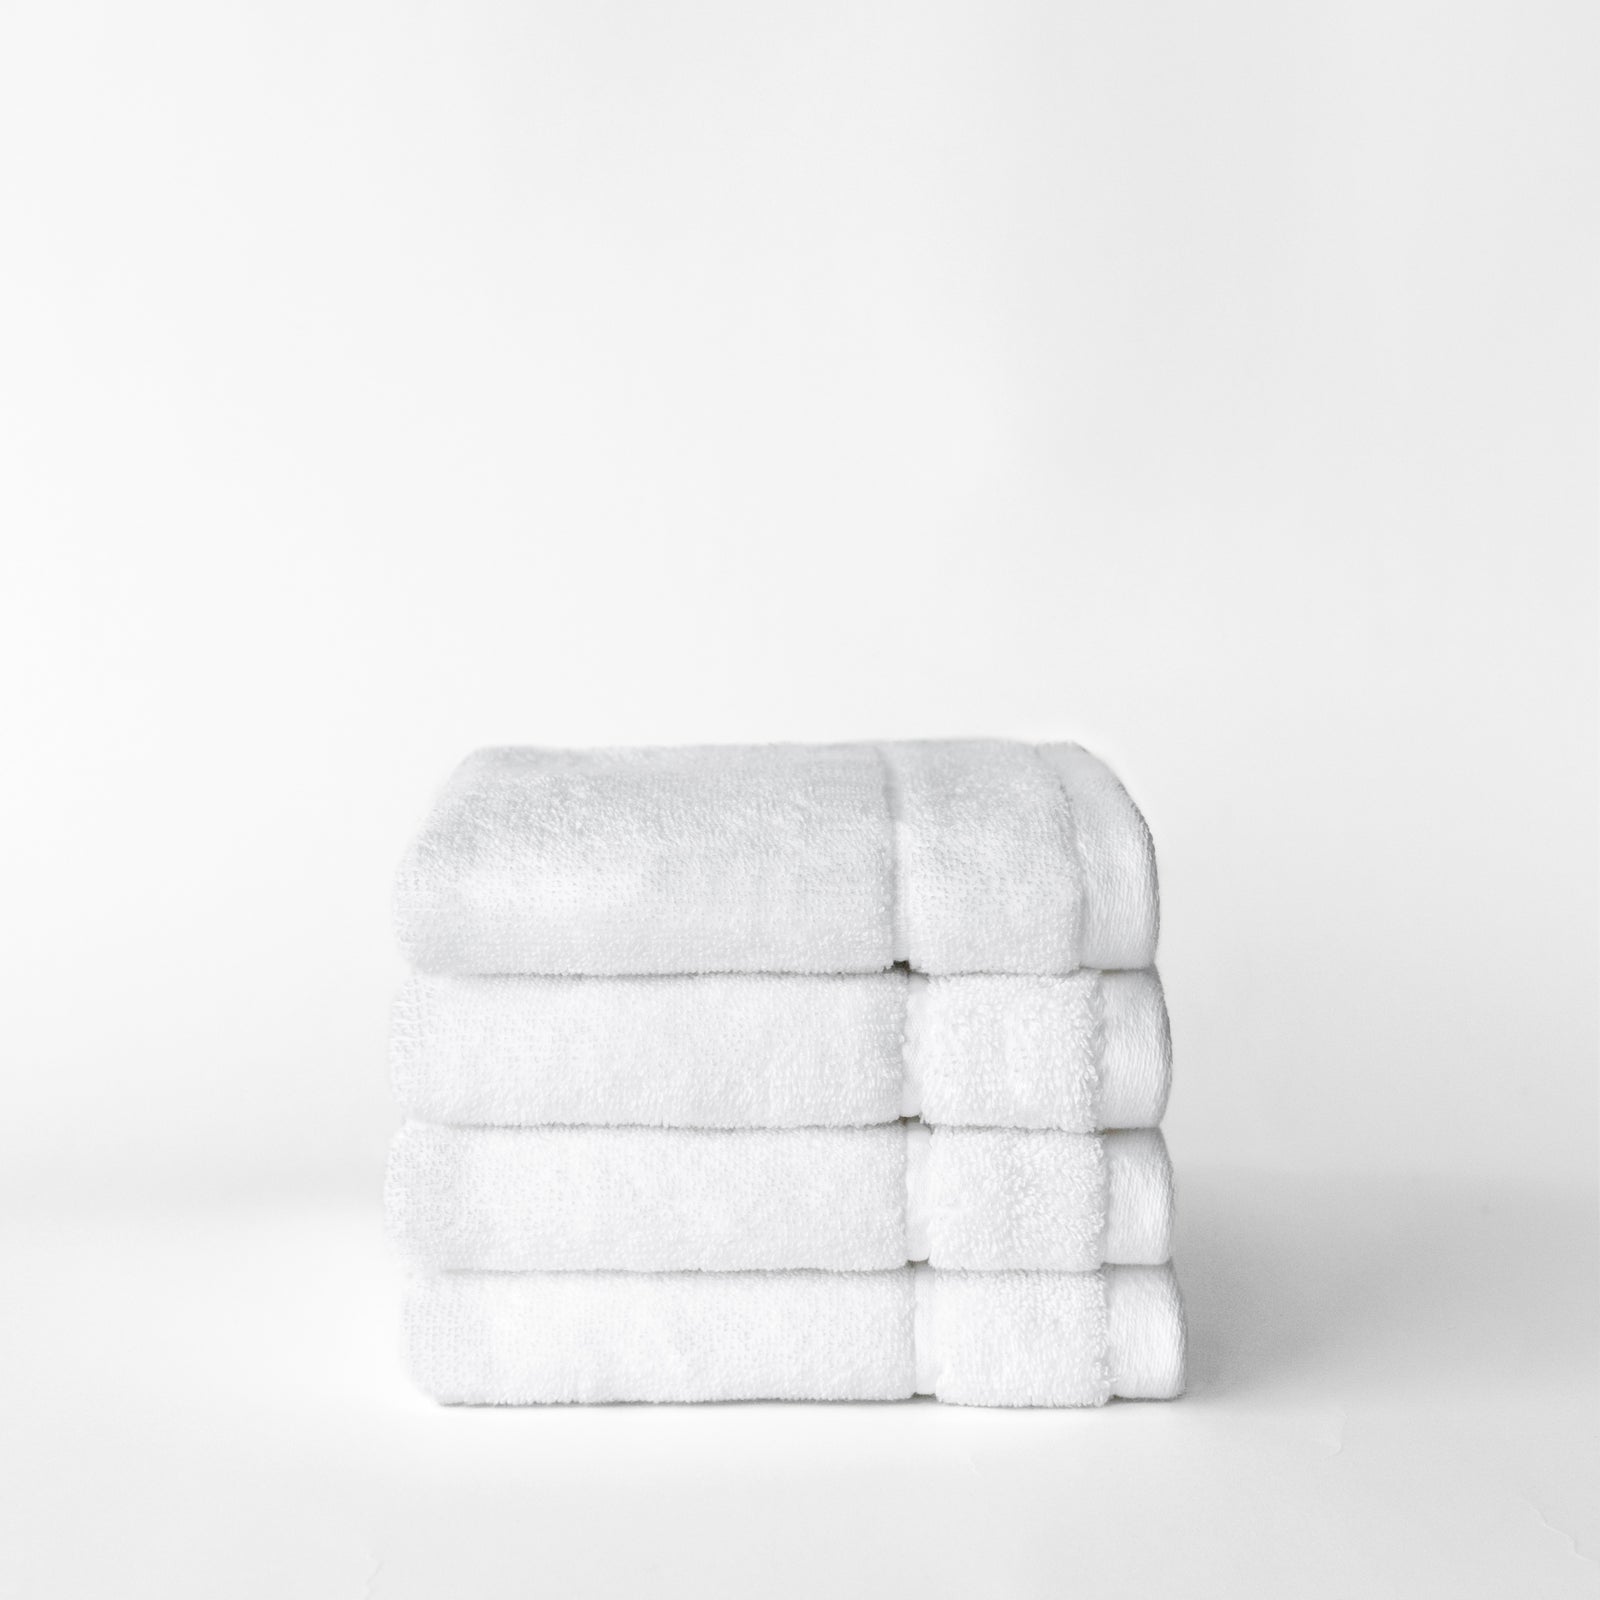 White Premium Plush Wash Cloths. Photo of Premium Plush Wash Cloths taken with white background 